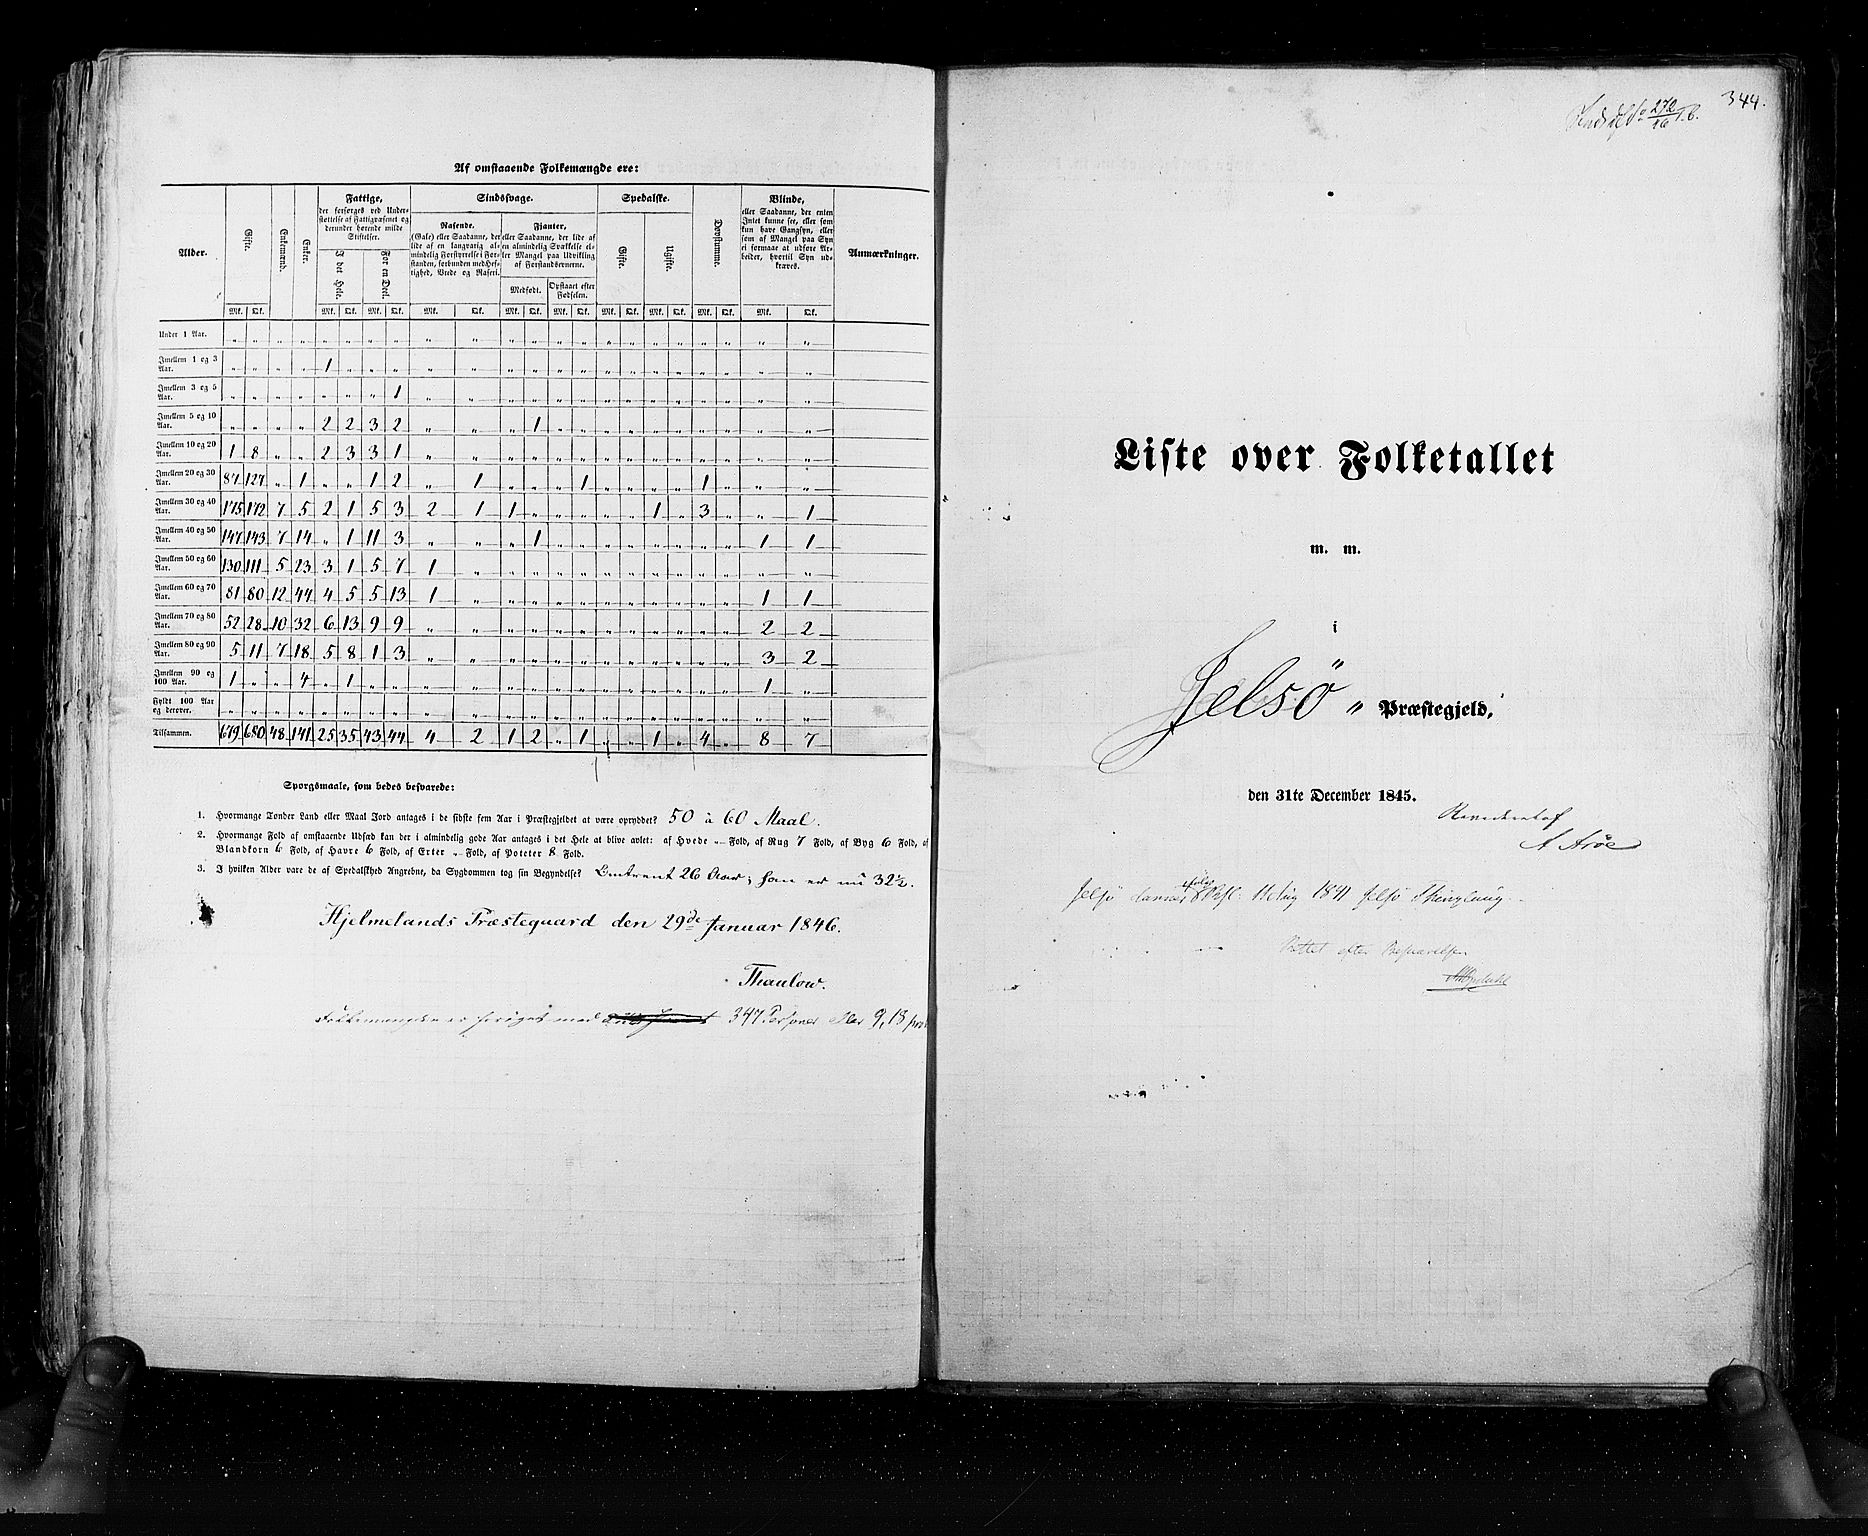 RA, Folketellingen 1845, bind 6: Lister og Mandal amt og Stavanger amt, 1845, s. 344